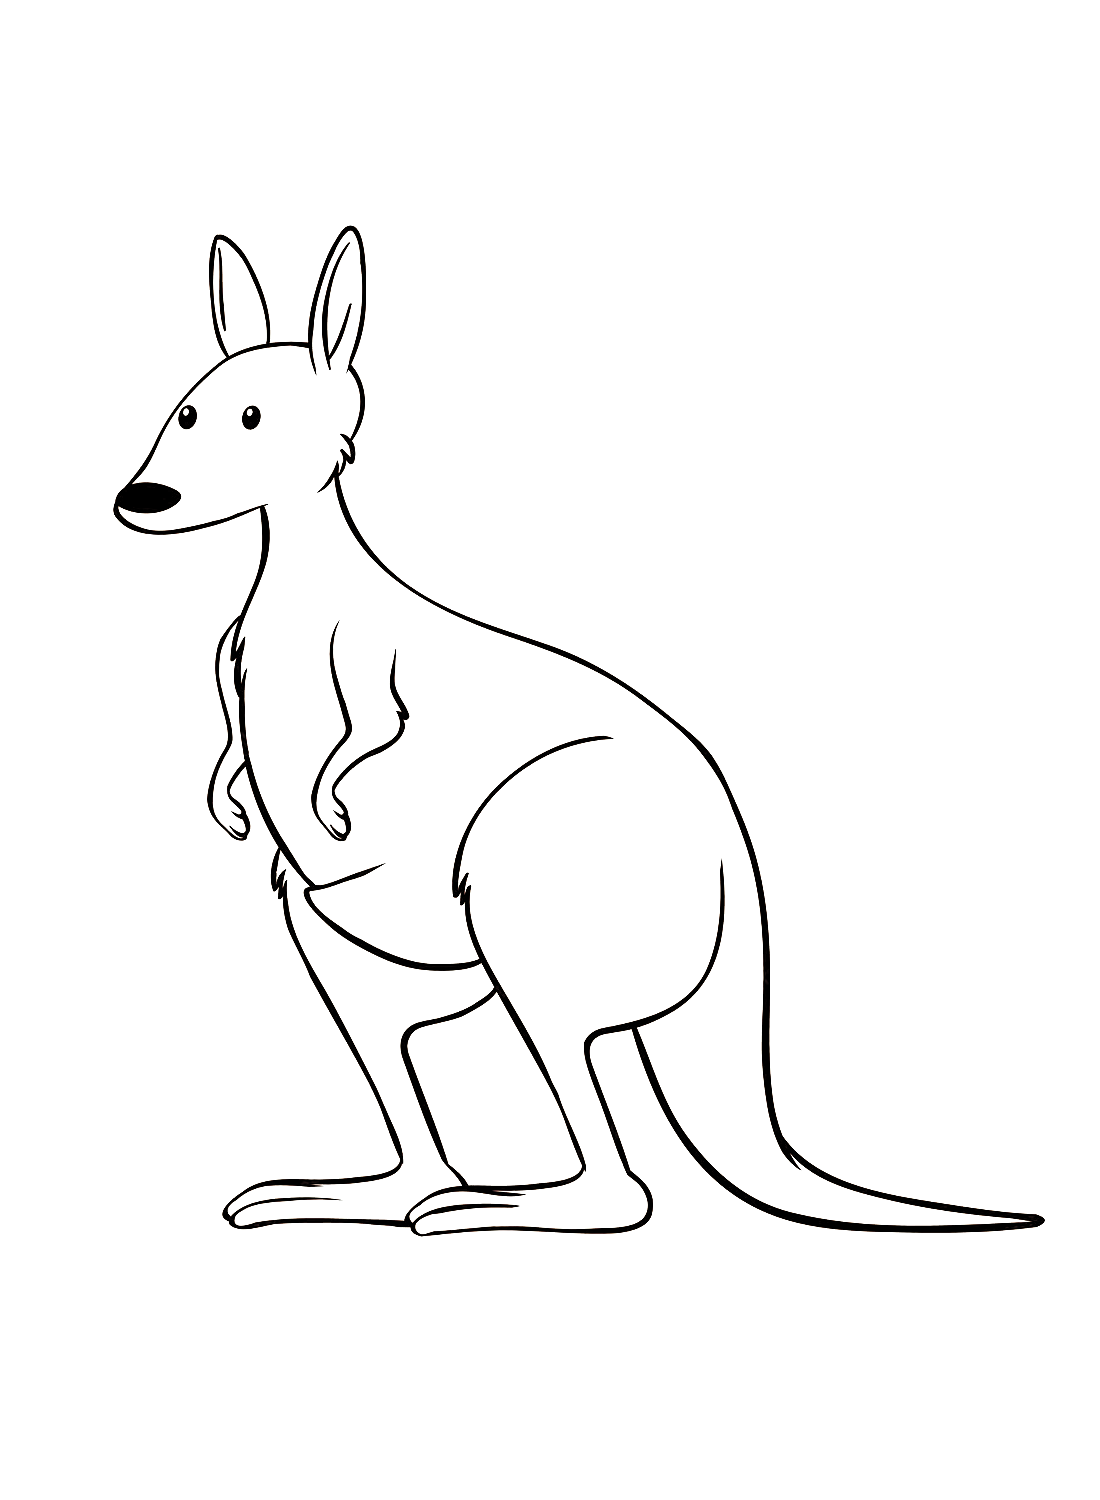 The simple Kangaroo from Kangaroo